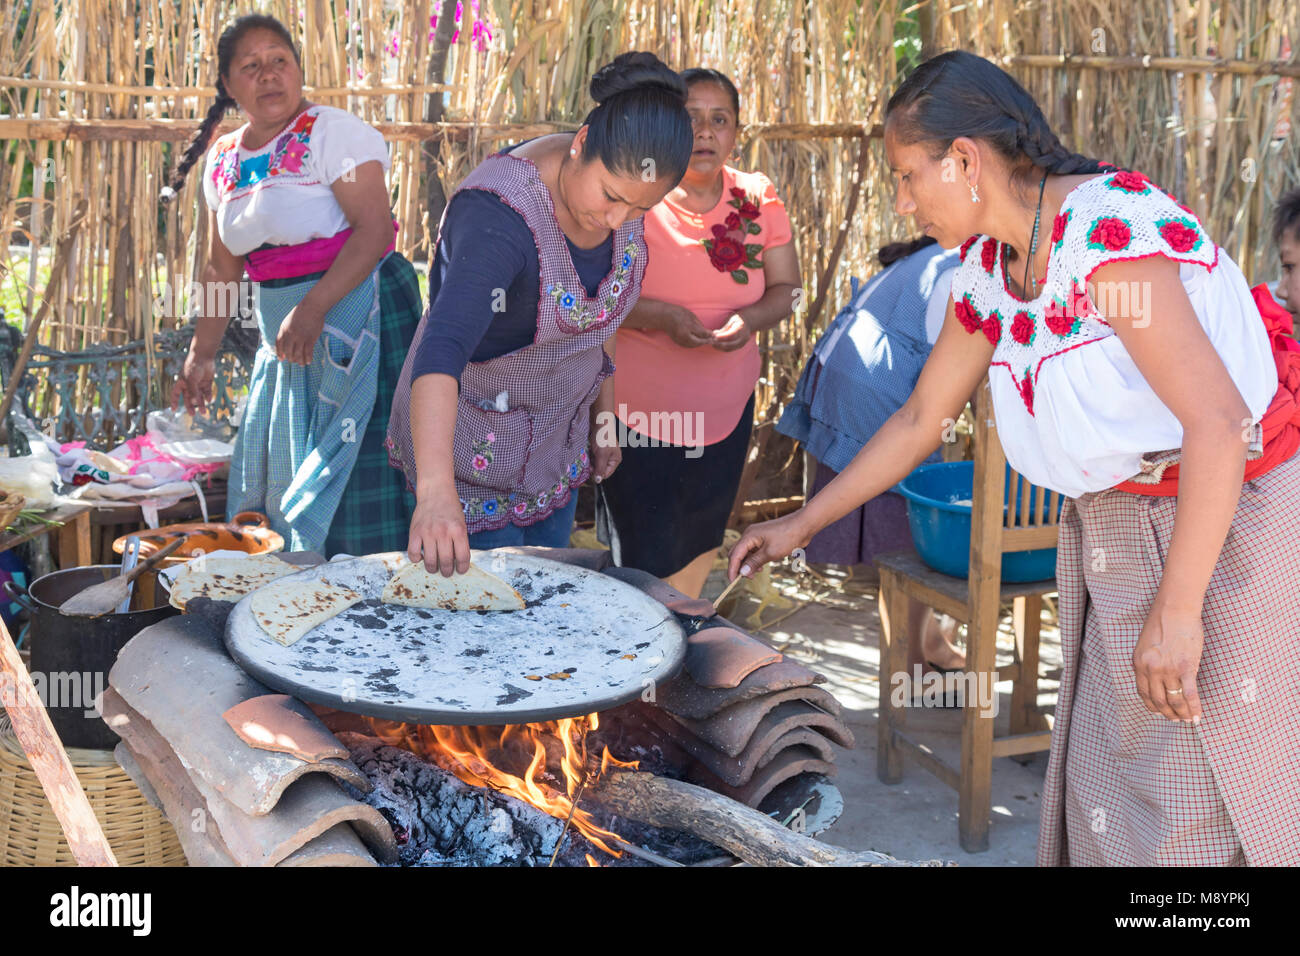 https://c8.alamy.com/compes/m8ypkj/san-juan-teitipac-oaxaca-mexico-mujeres-haciendo-tortillas-en-un-comal-durante-la-feria-y-el-patrimonio-linguistico-en-un-pequeno-pueblo-zapoteca-m8ypkj.jpg